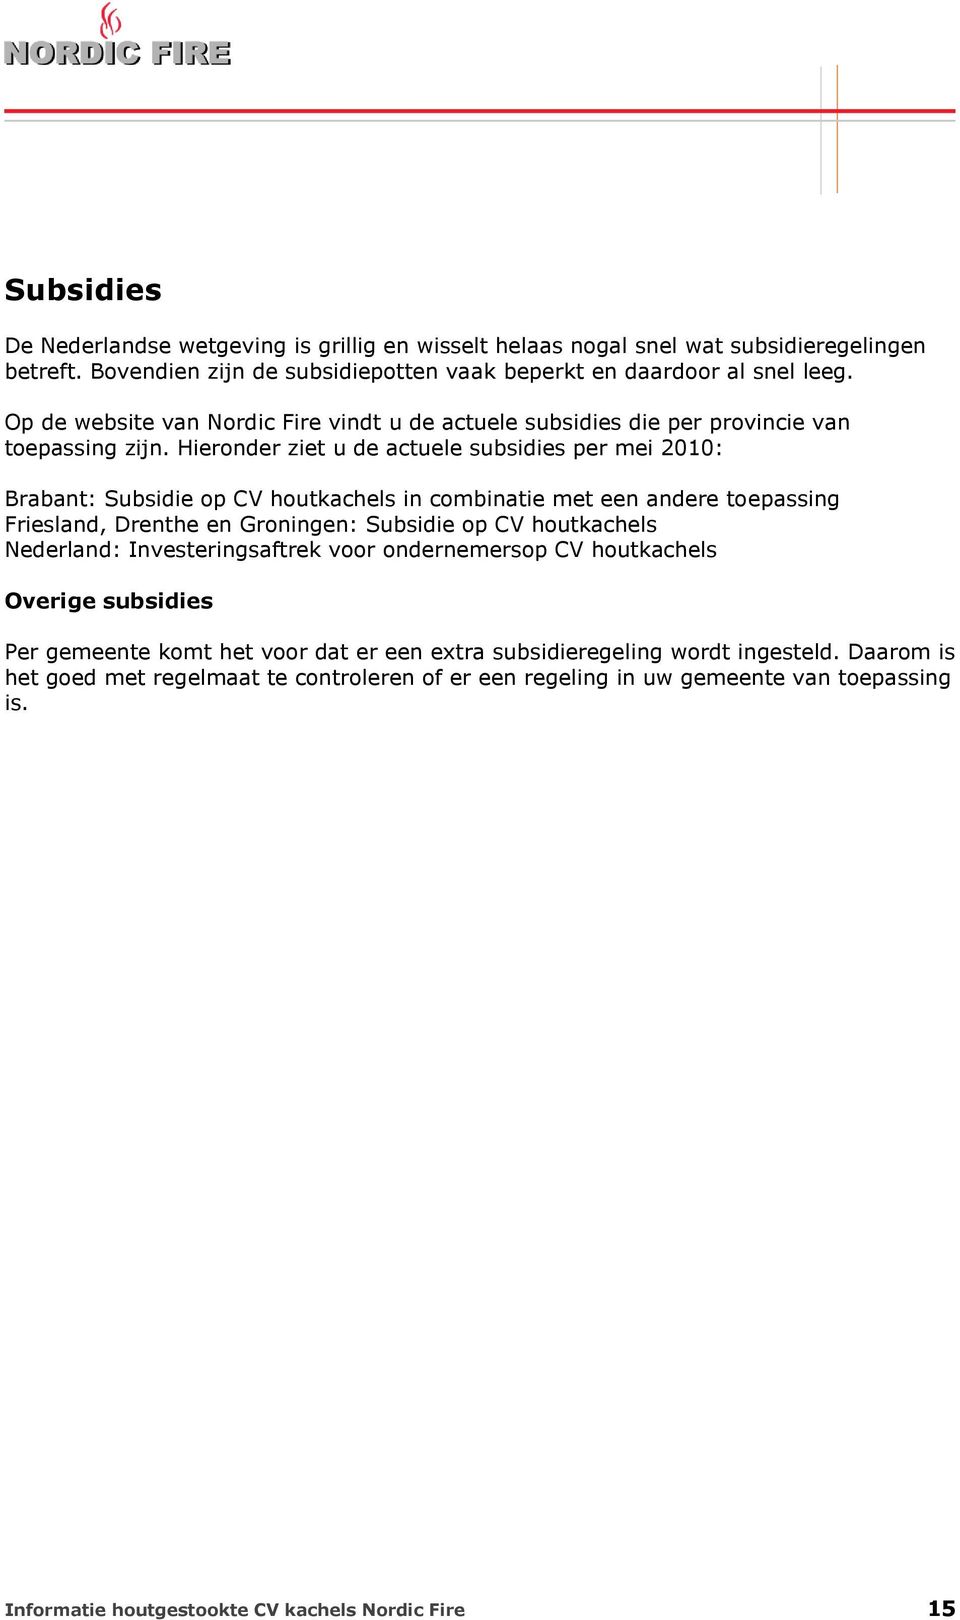 Hieronder ziet u de actuele subsidies per mei 2010: Brabant: Subsidie op CV houtkachels in combinatie met een andere toepassing Friesland, Drenthe en Groningen: Subsidie op CV houtkachels